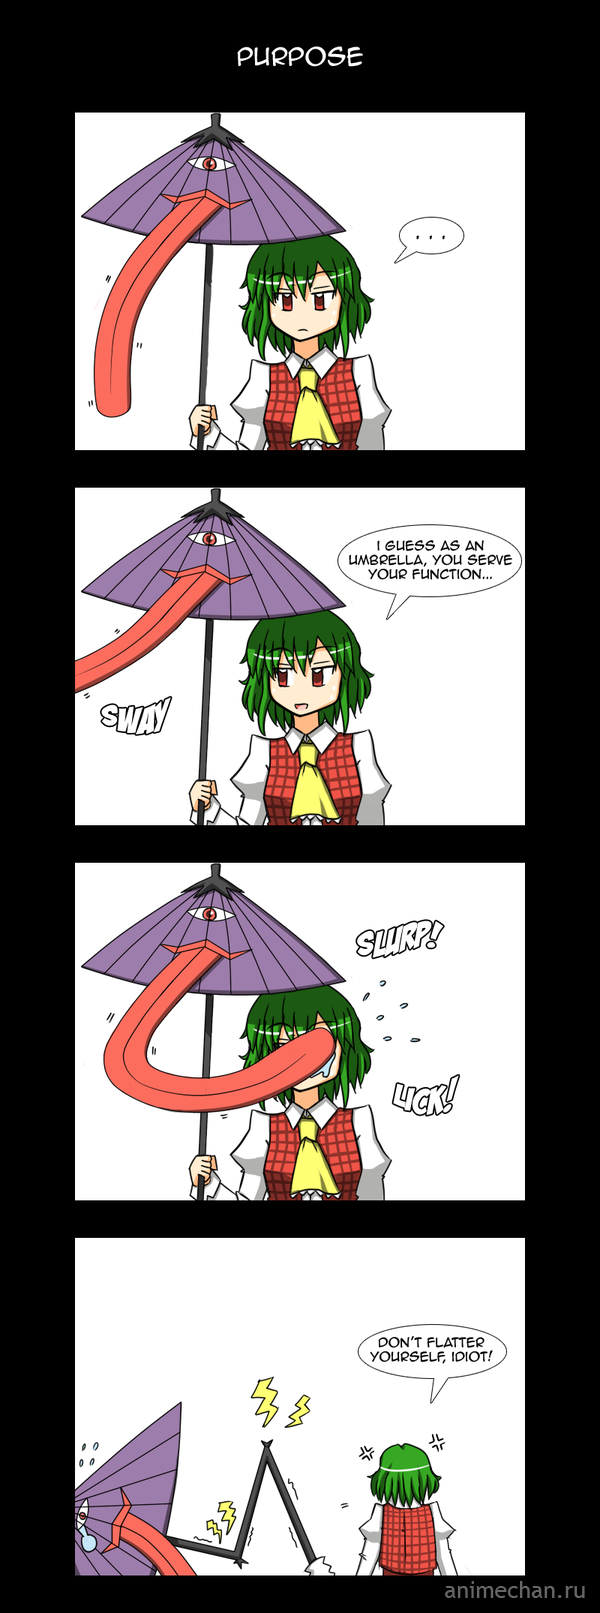 Предназначение зонтика